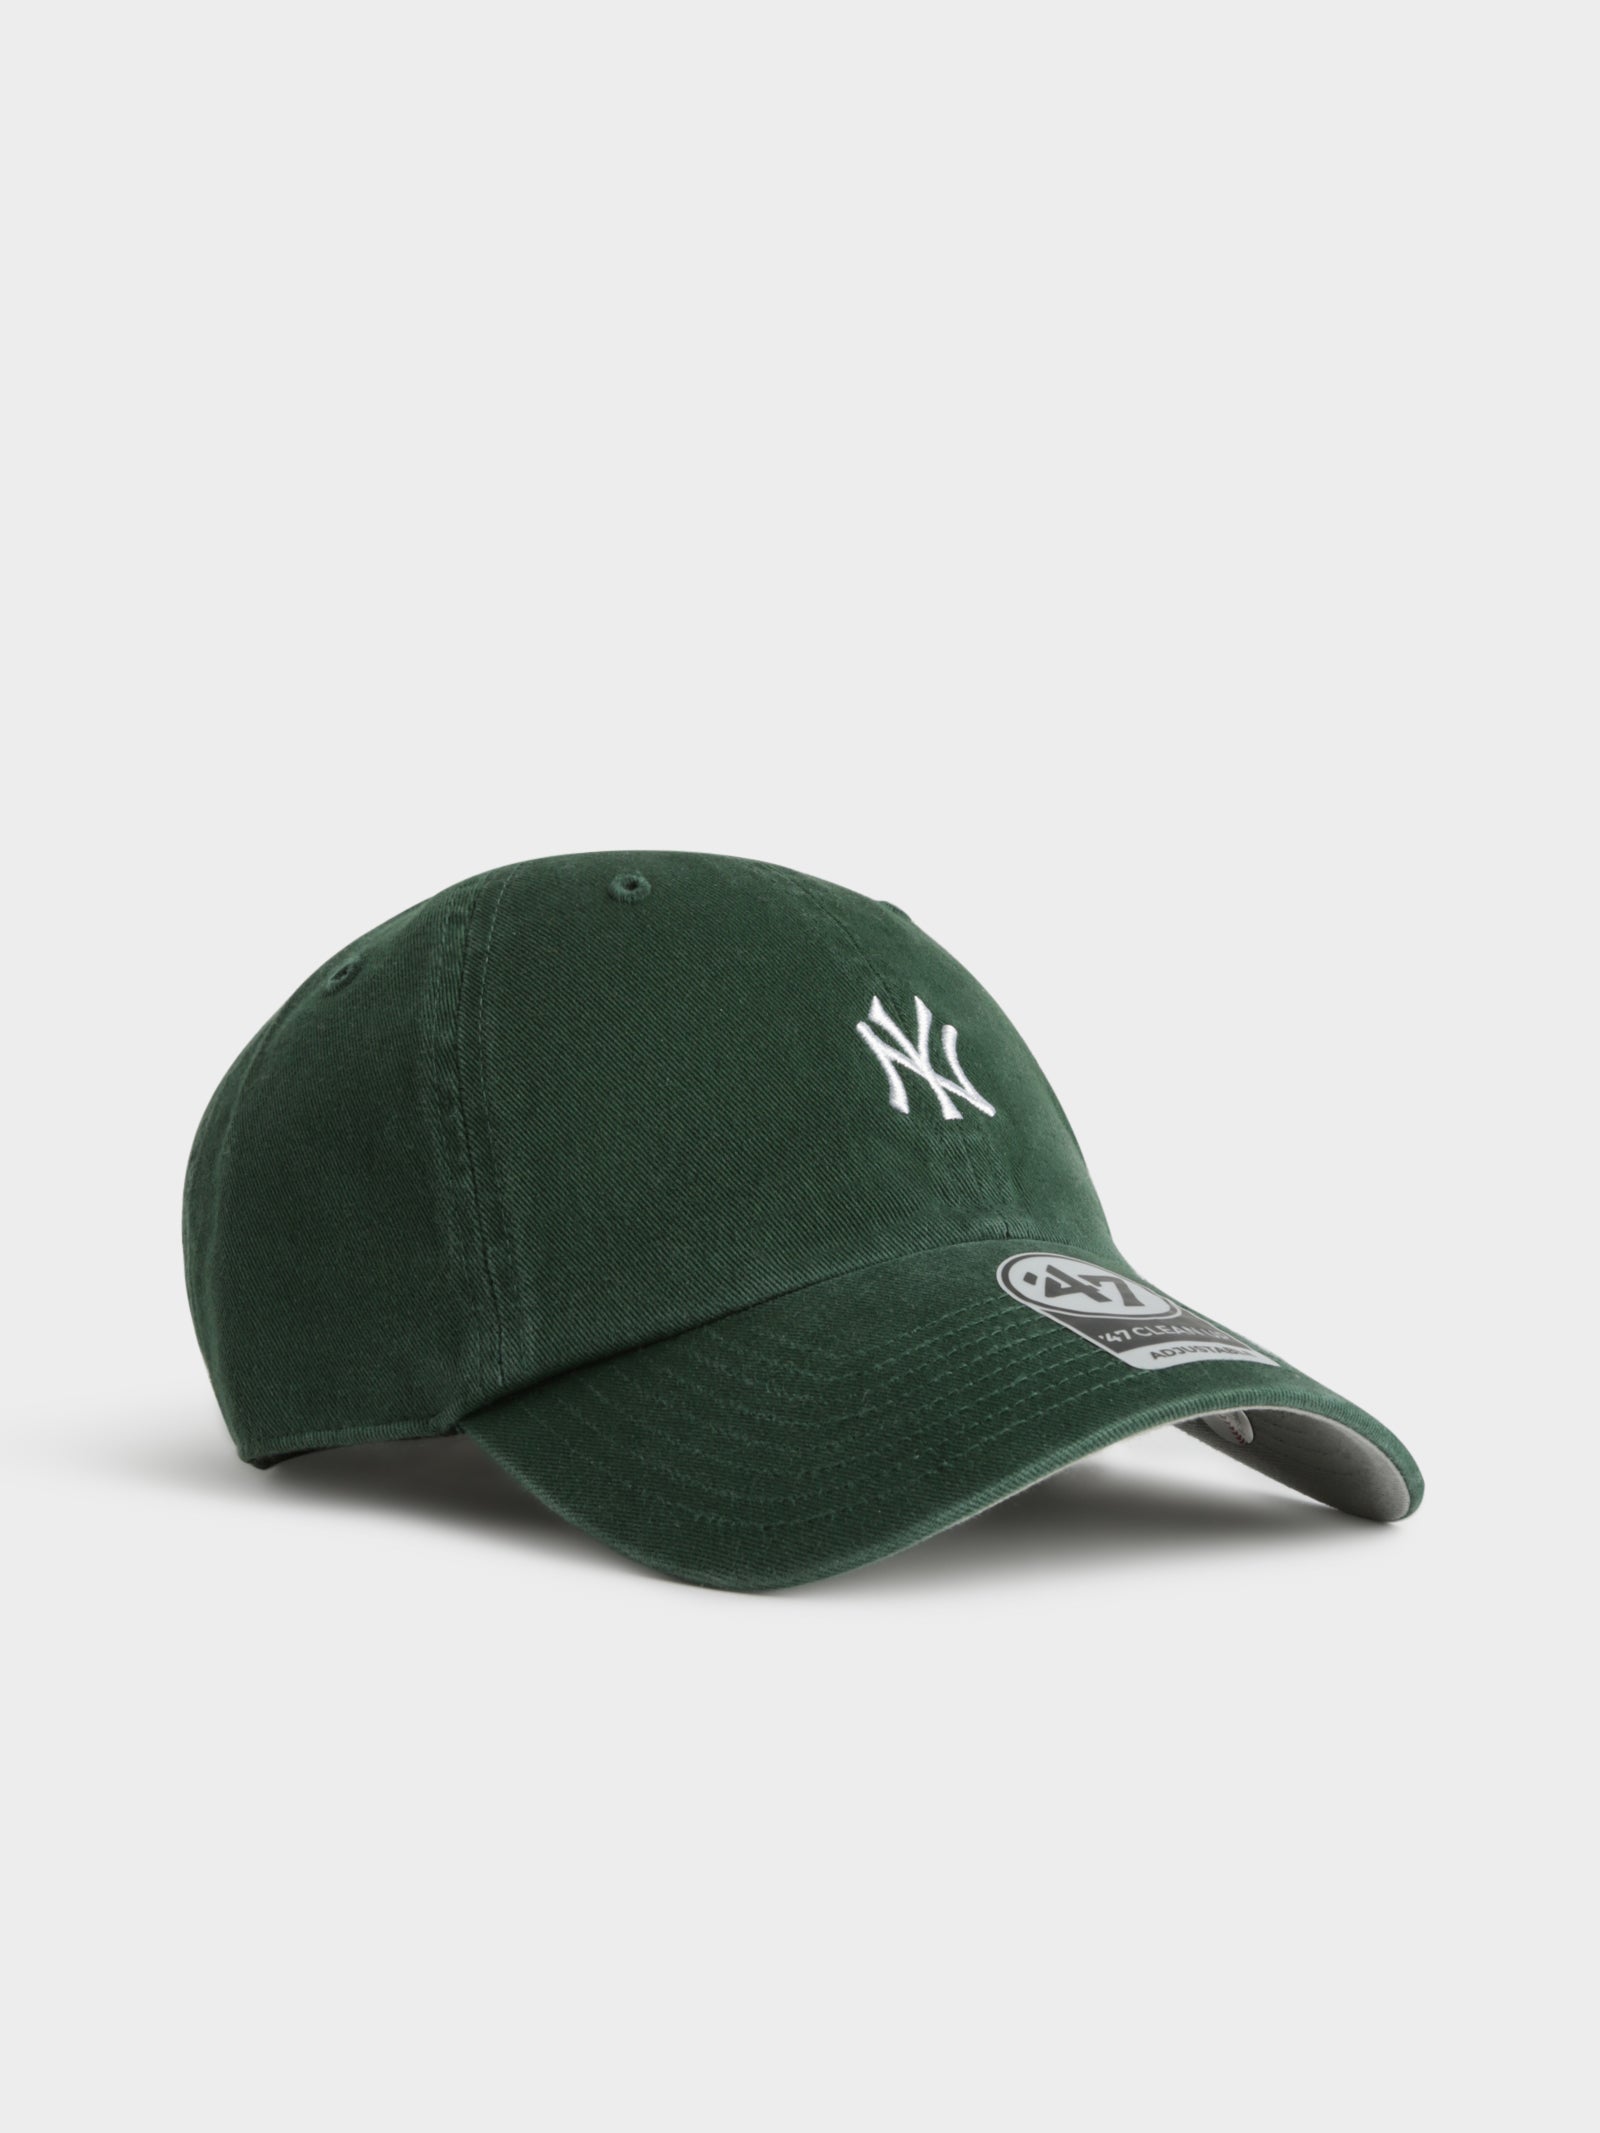 New York Yankees 47 Brand Carhartt Hat Men Baseball Runner Cotton